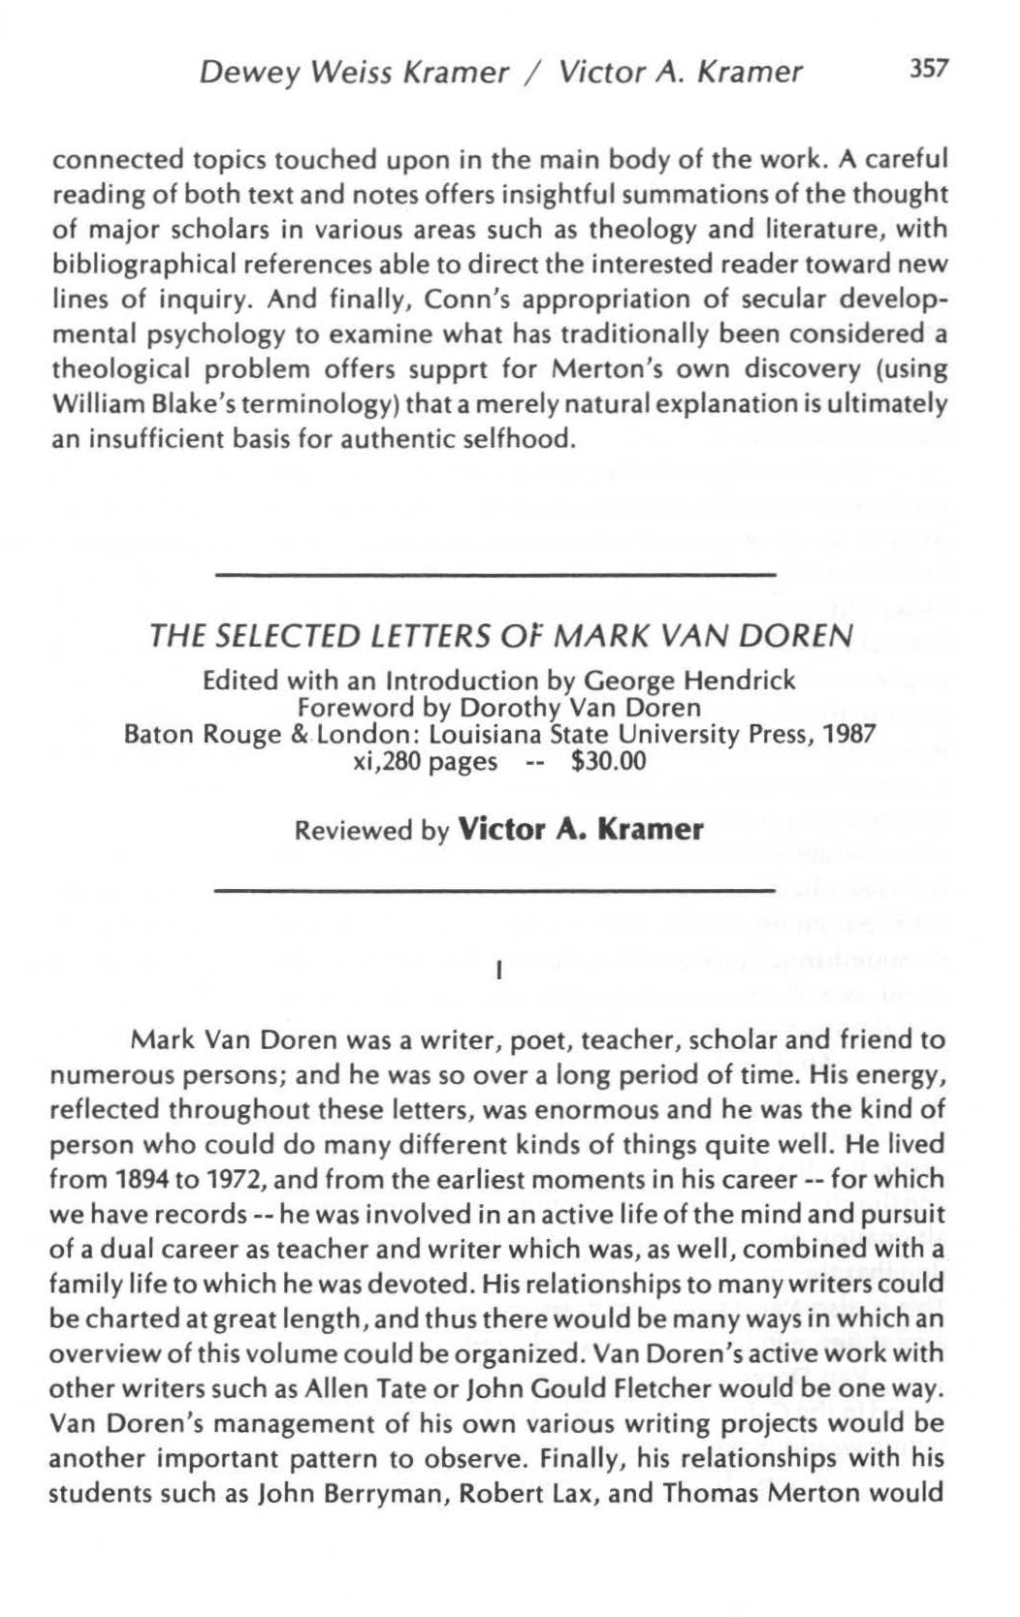 The Selected Letters of Mark Van Doren